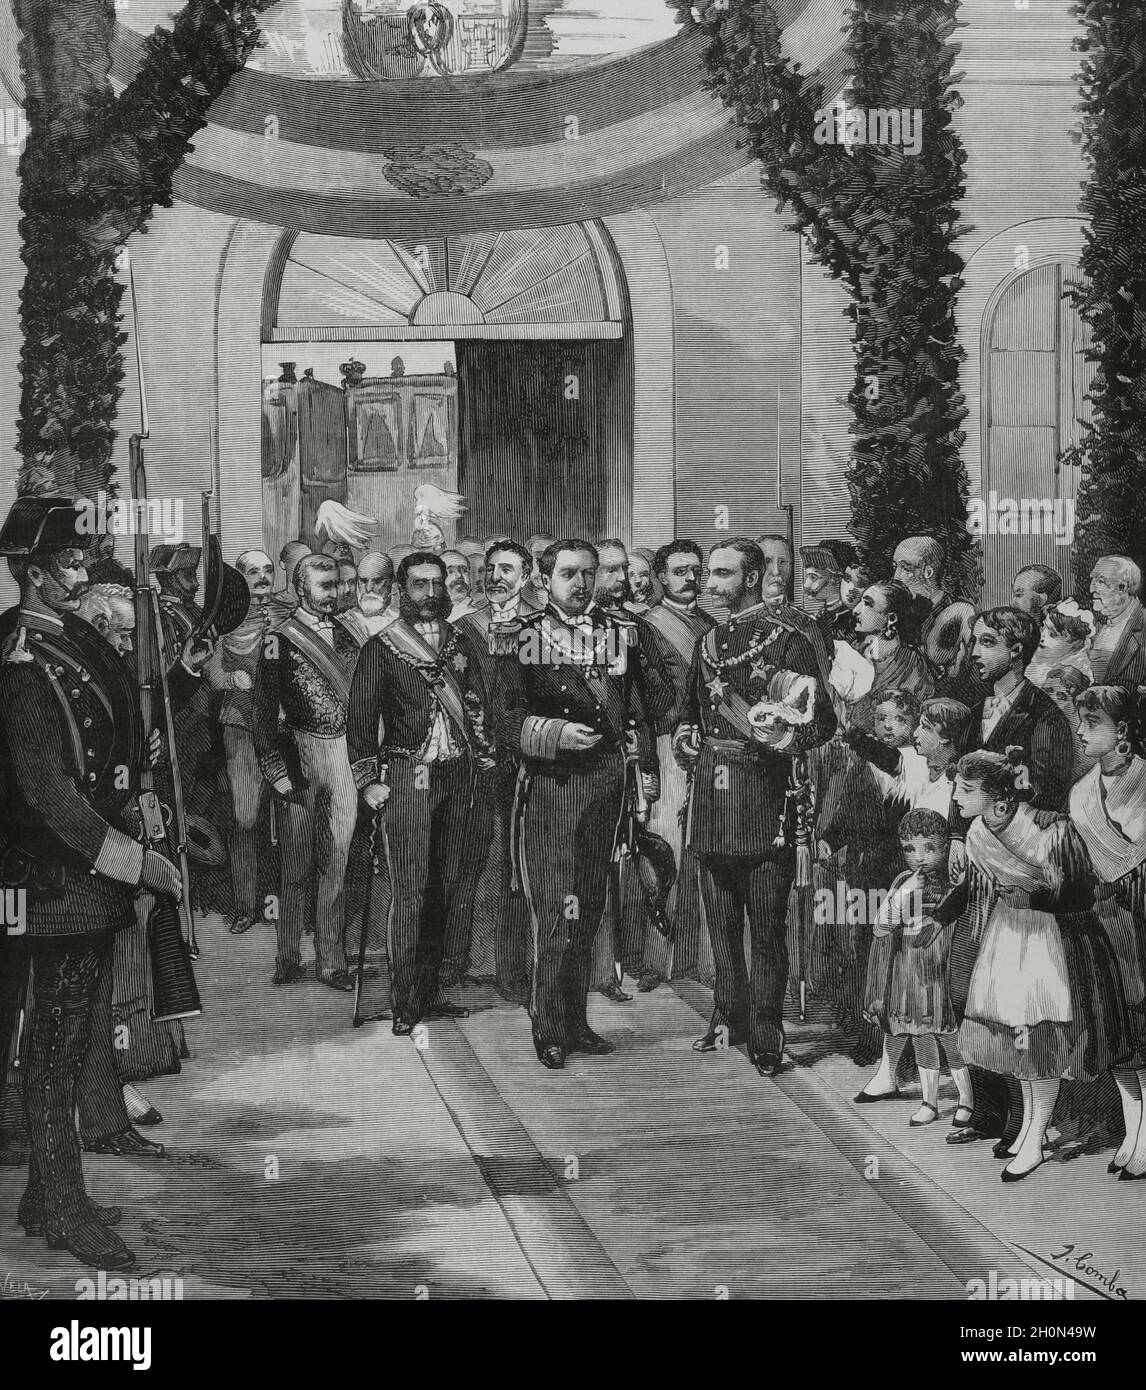 Espagne, Estrémadure, province de Caceres, Valence de Alcántara.Le roi Alfonso XII d'Espagne (1857-1885) et le roi Luis I du Portugal (1838-1889) sur l'occa Banque D'Images